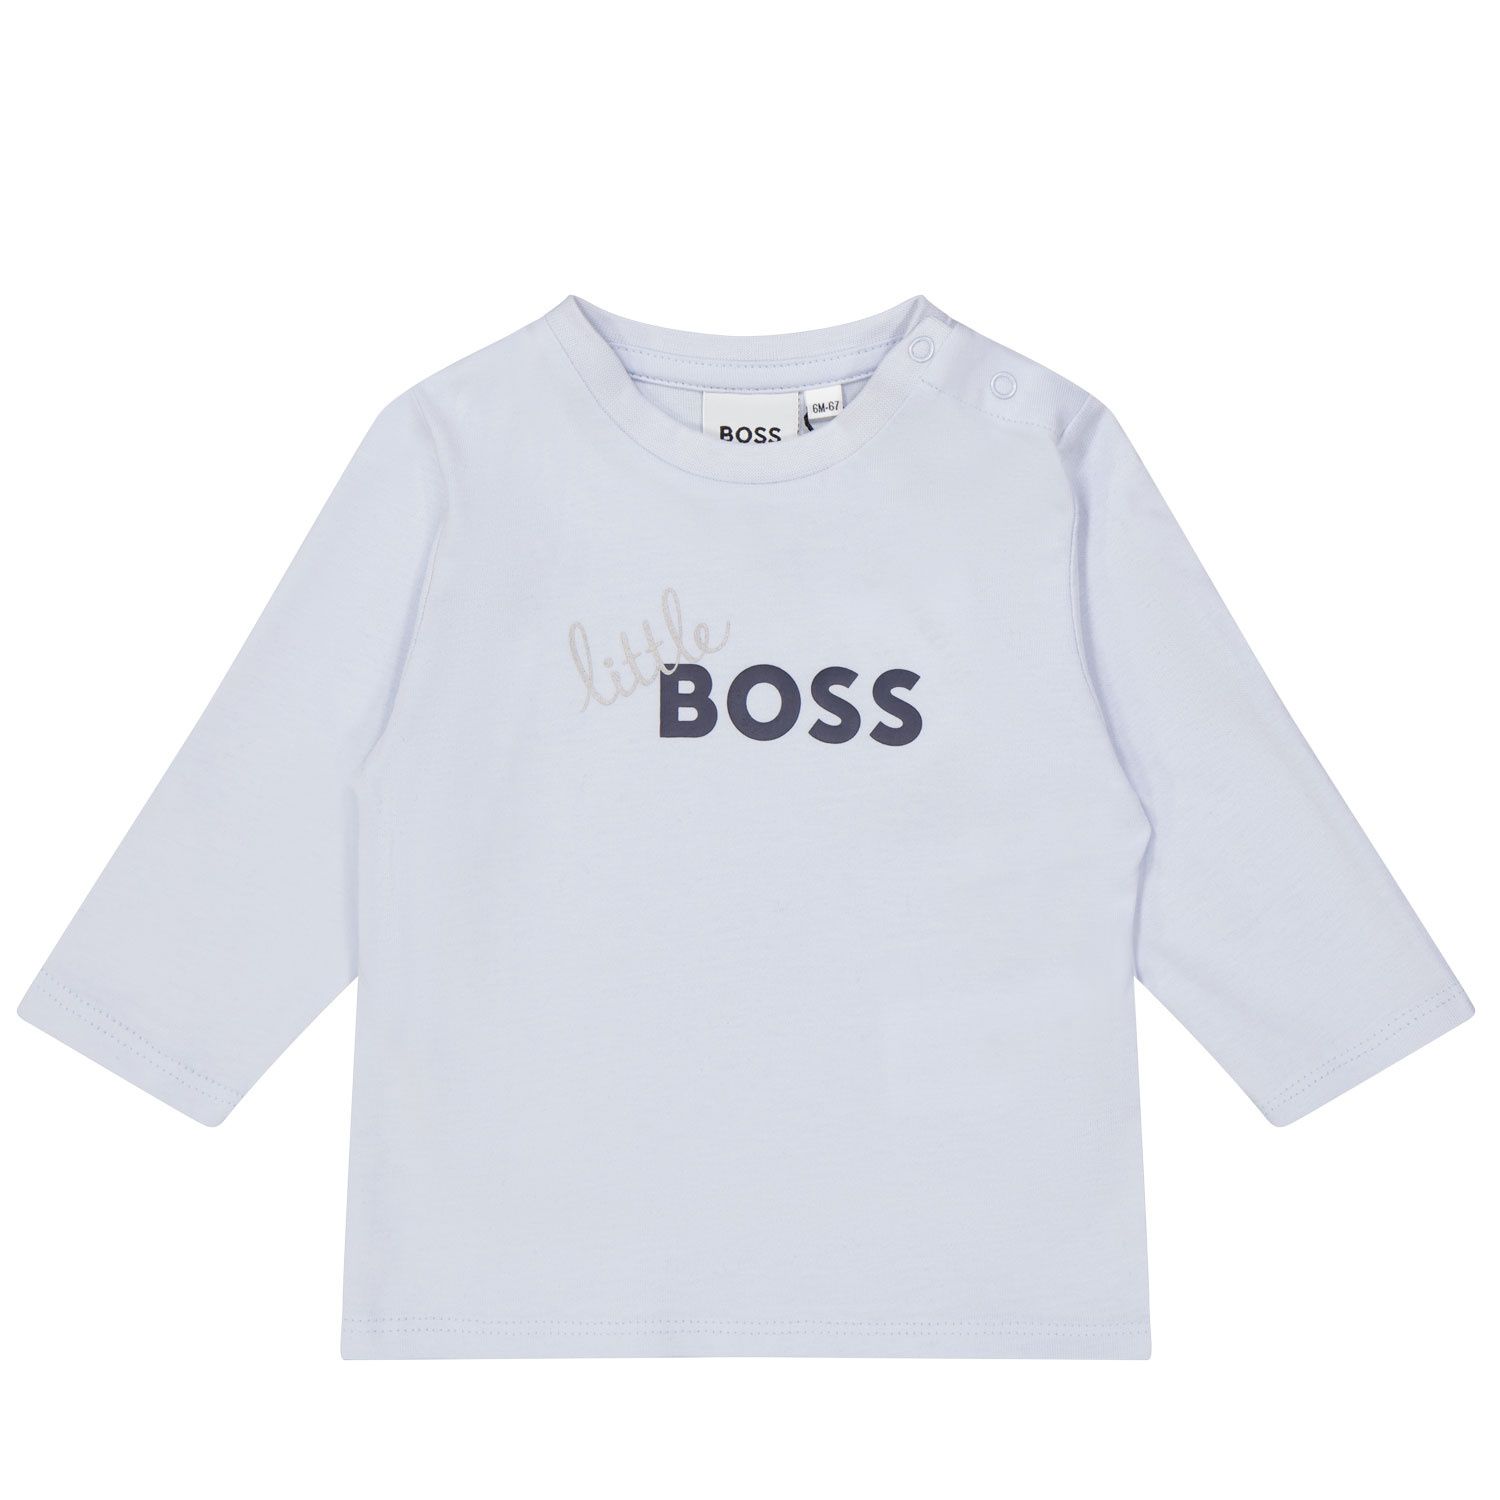 Afbeelding van Boss J95338 baby t-shirt licht blauw